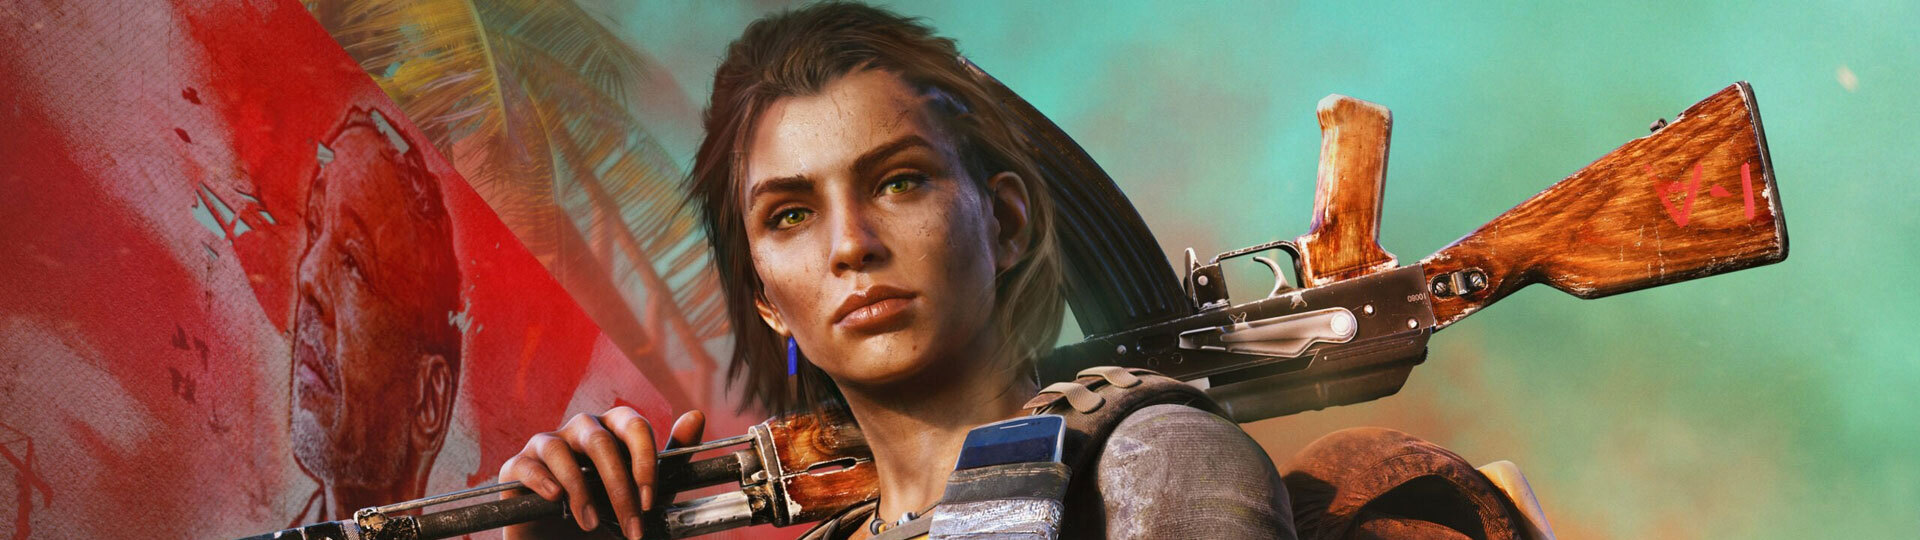 Ubisoft údajně pracuje na Far Cry 7 a multiplayerovém spin-offu | Spekulace